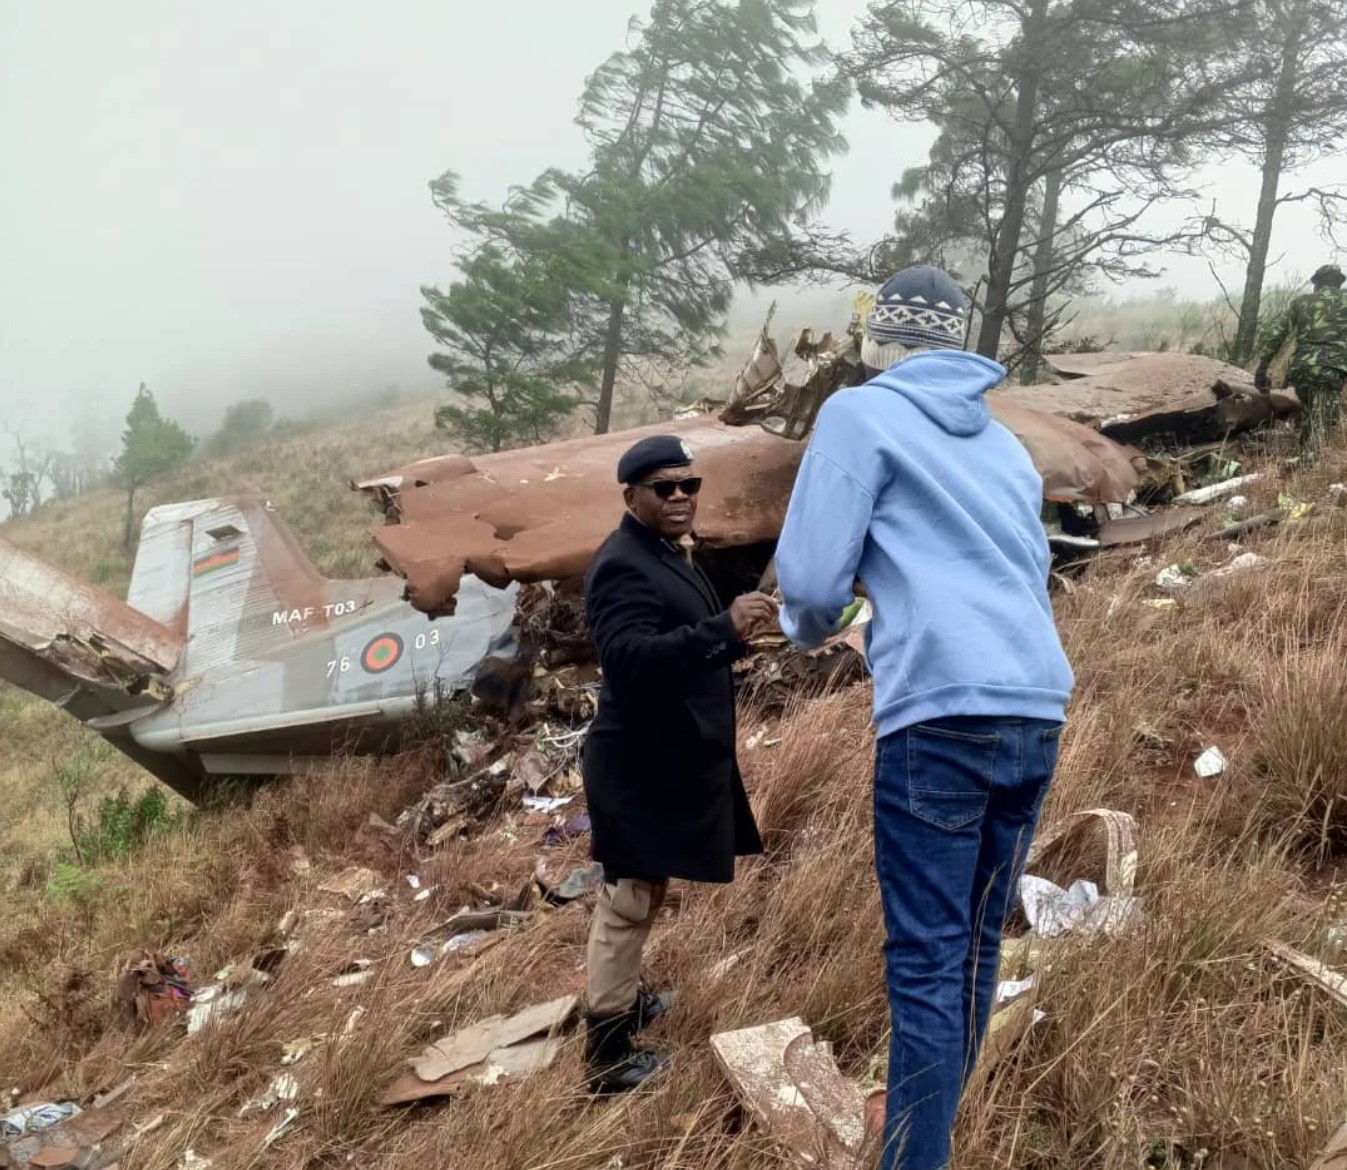 马拉维副总统所乘飞机坠毁 机上人员全部遇难